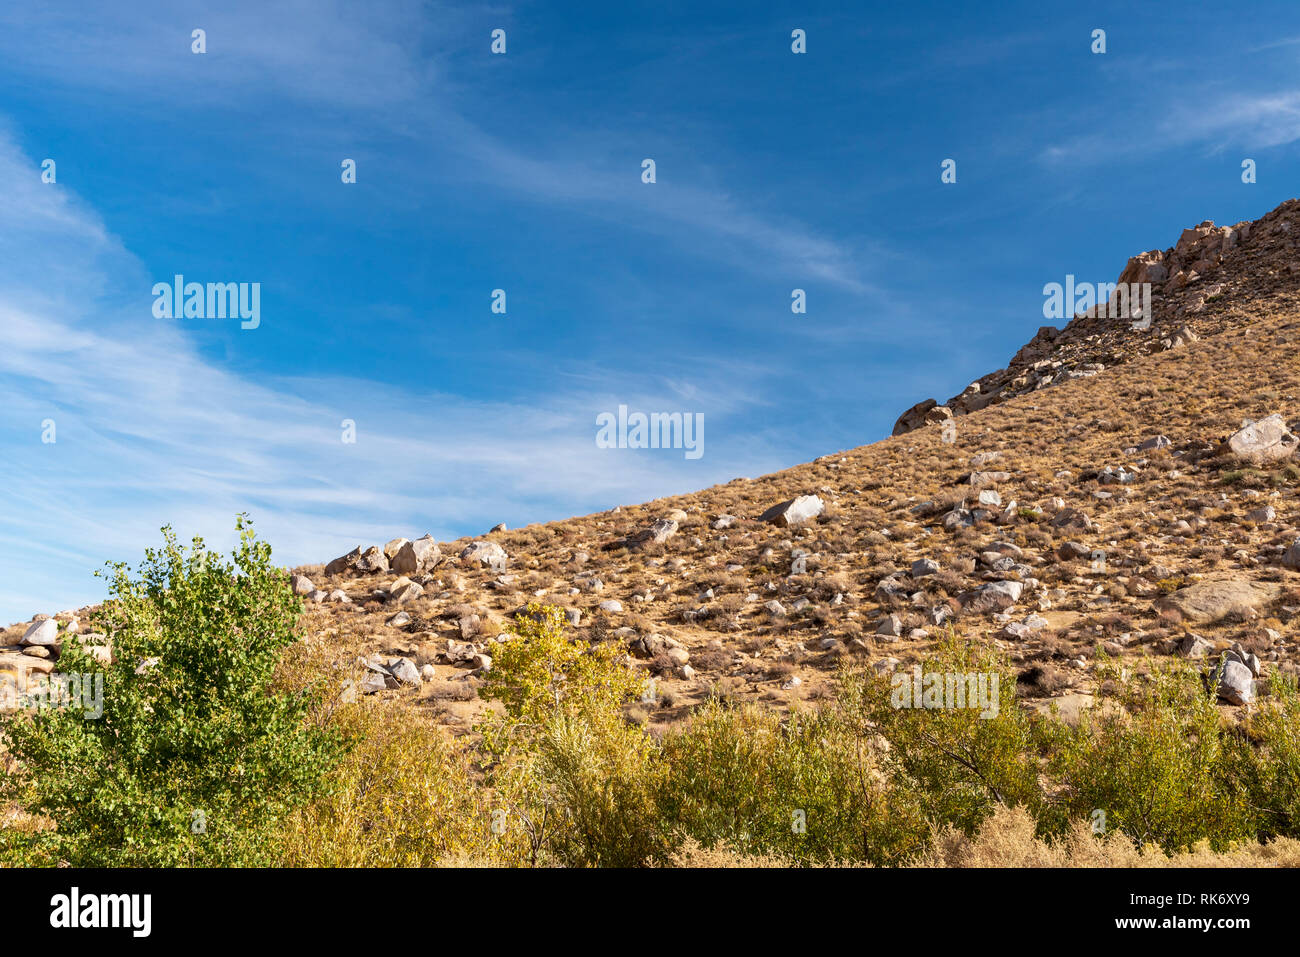 Árboles verdes debajo de un desierto rocoso lado montaña bajo el brillante cielo azul con nubes blancas. Foto de stock